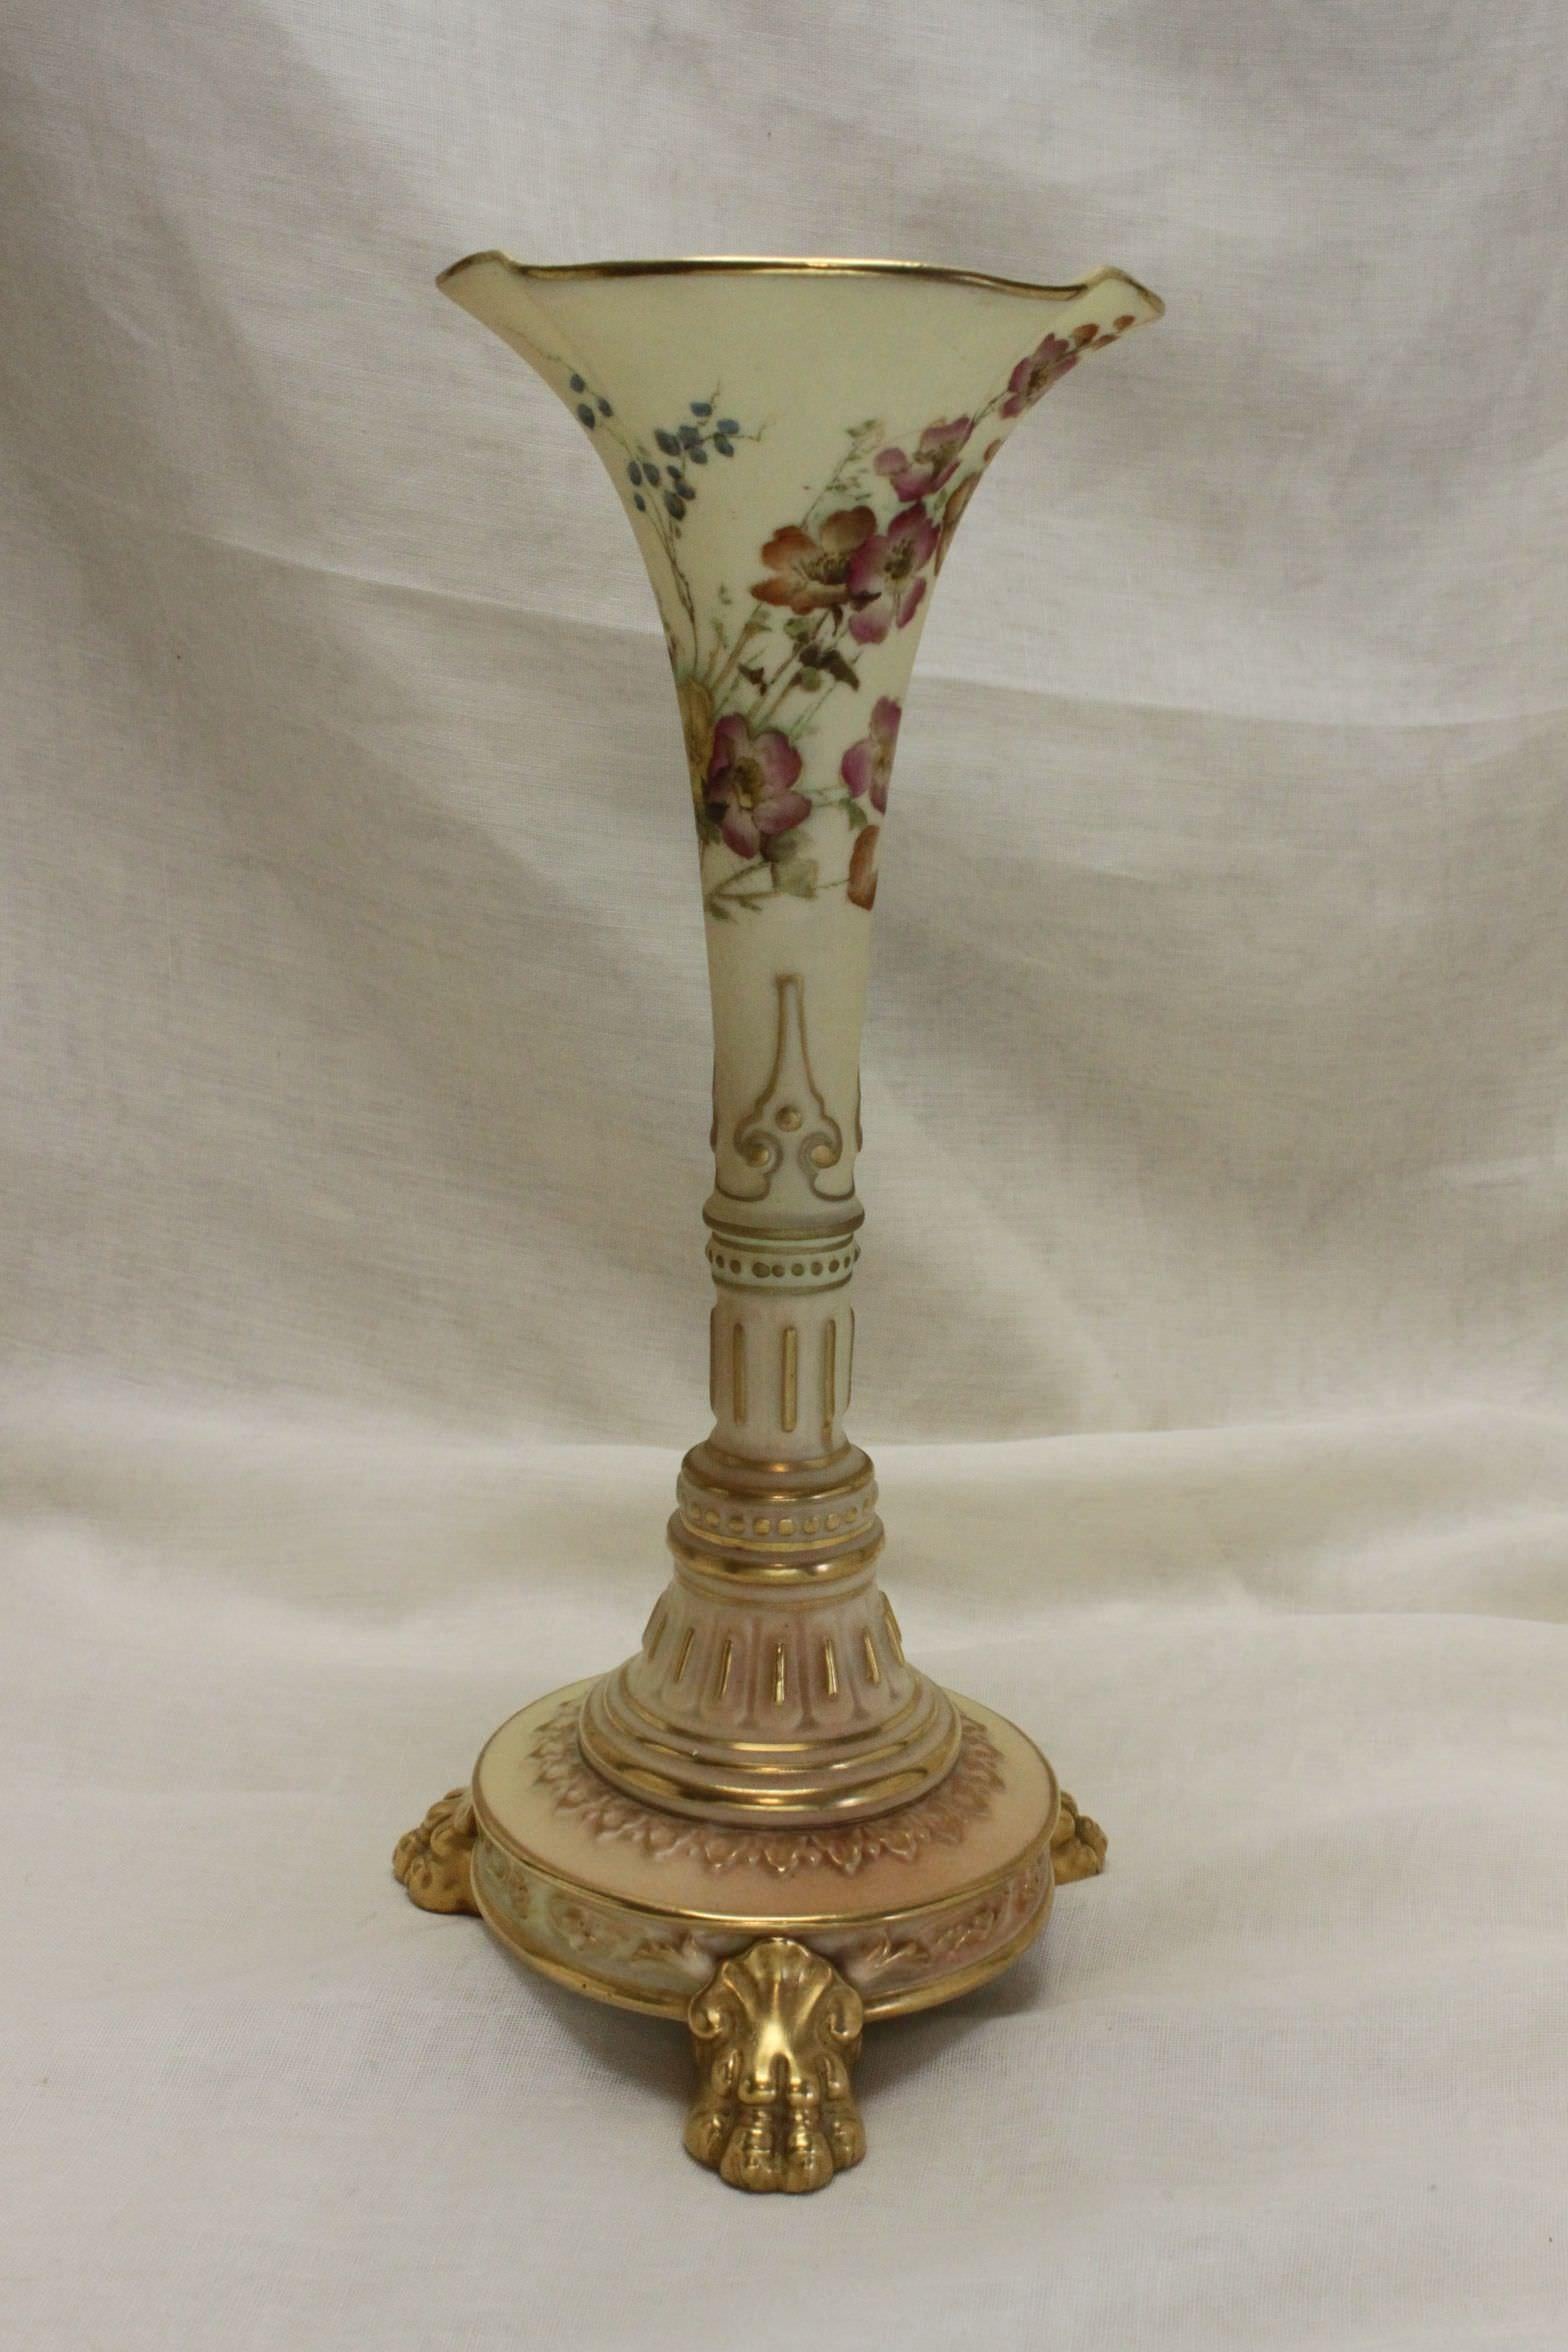 Ce vase inhabituel de Royal Worcester est présenté dans la liste des formes de Worcester comme un 